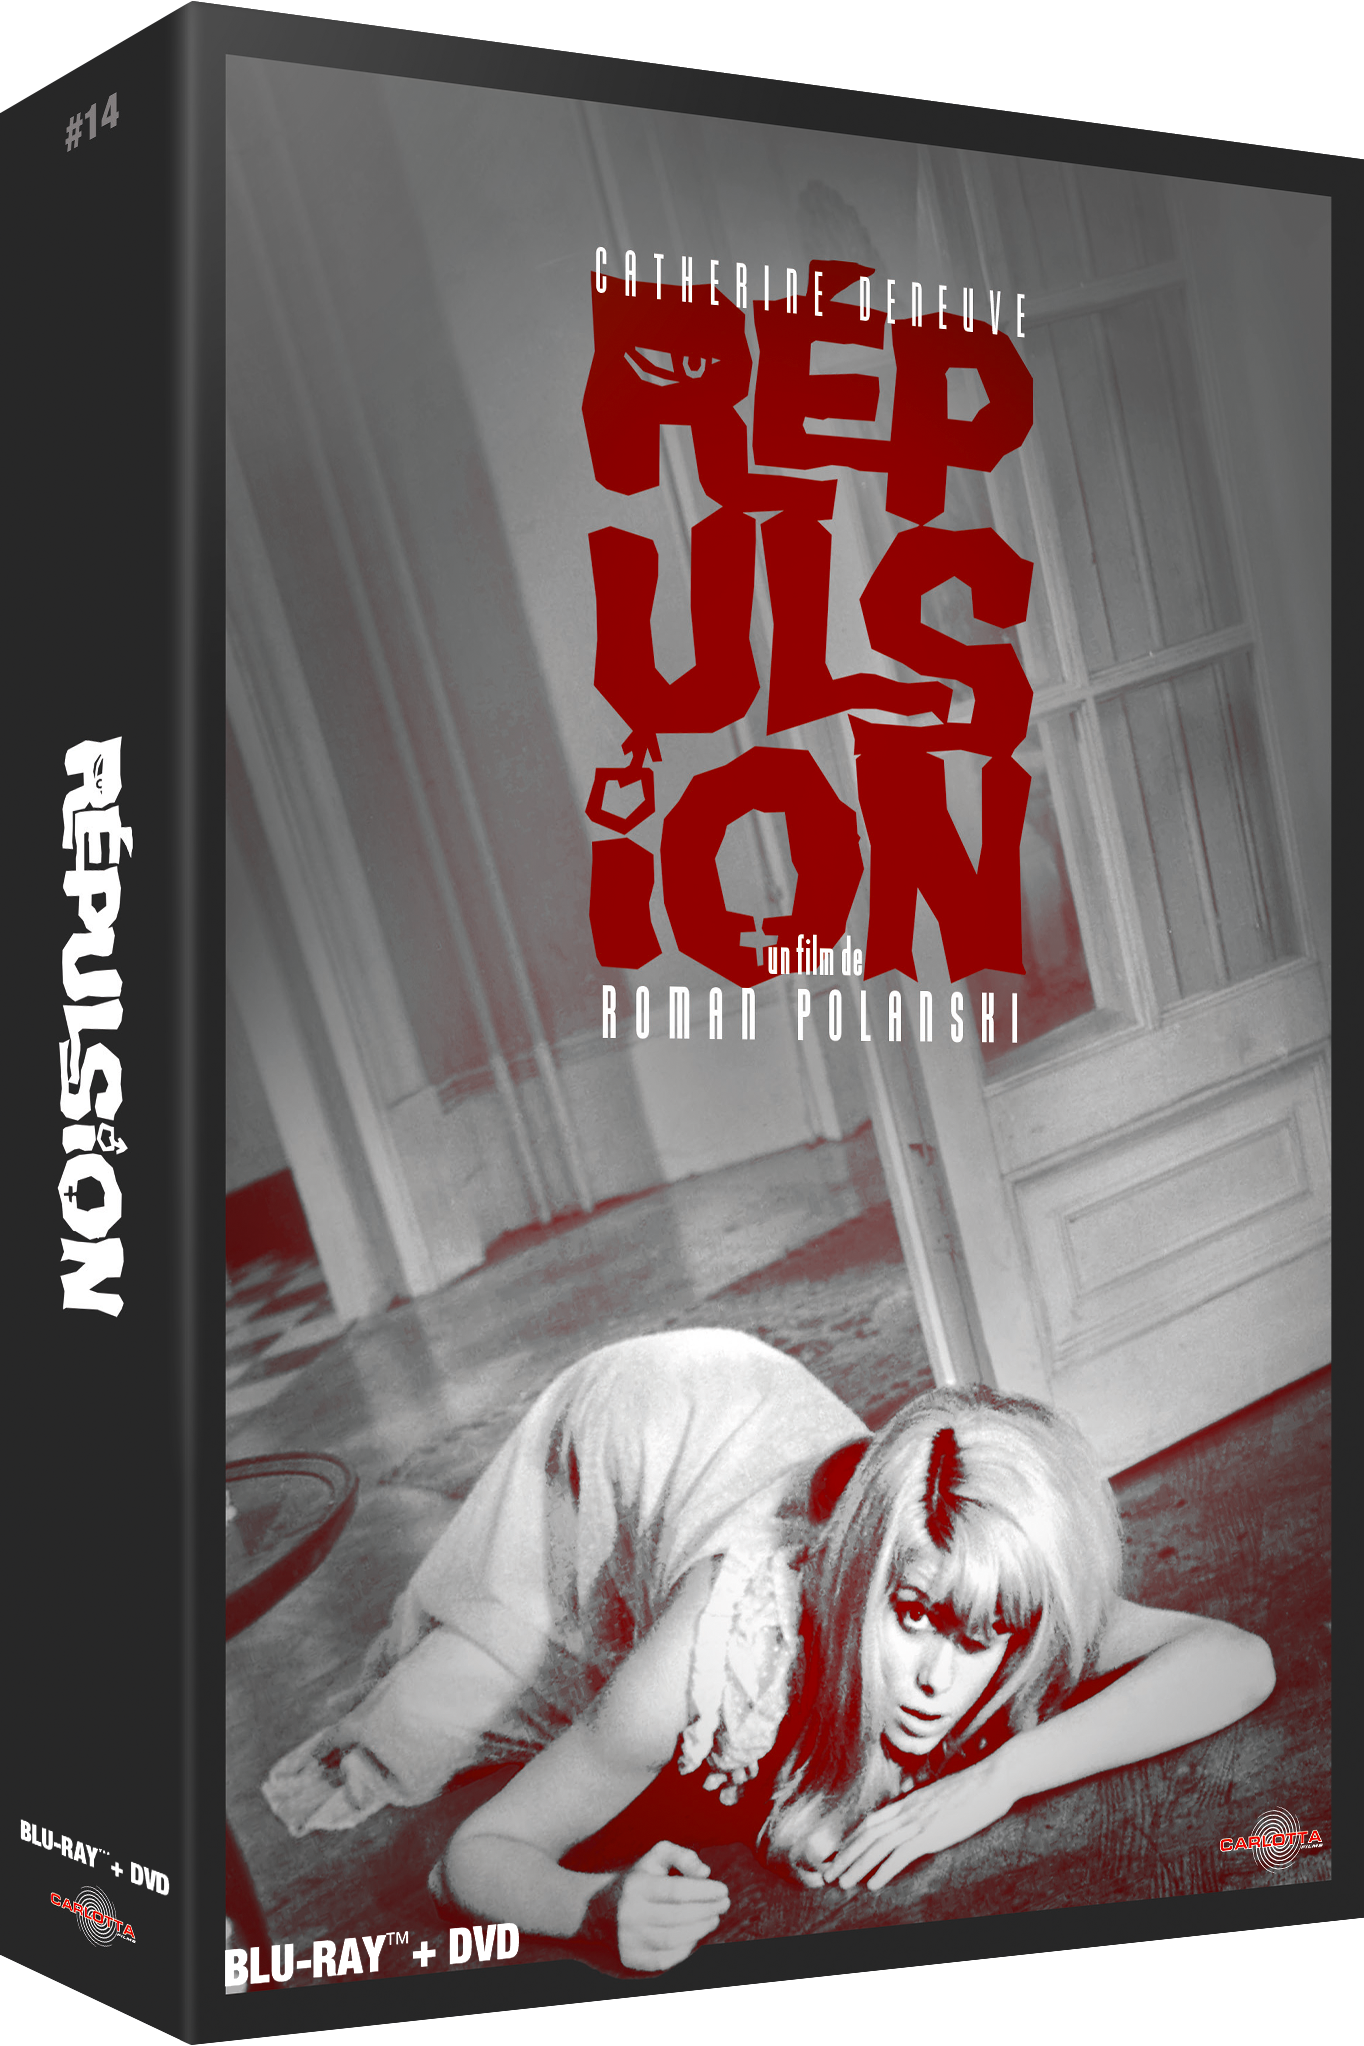 Repulsion - Prestige Limited Edition Combo Blu-ray/DVD + Memorabilia